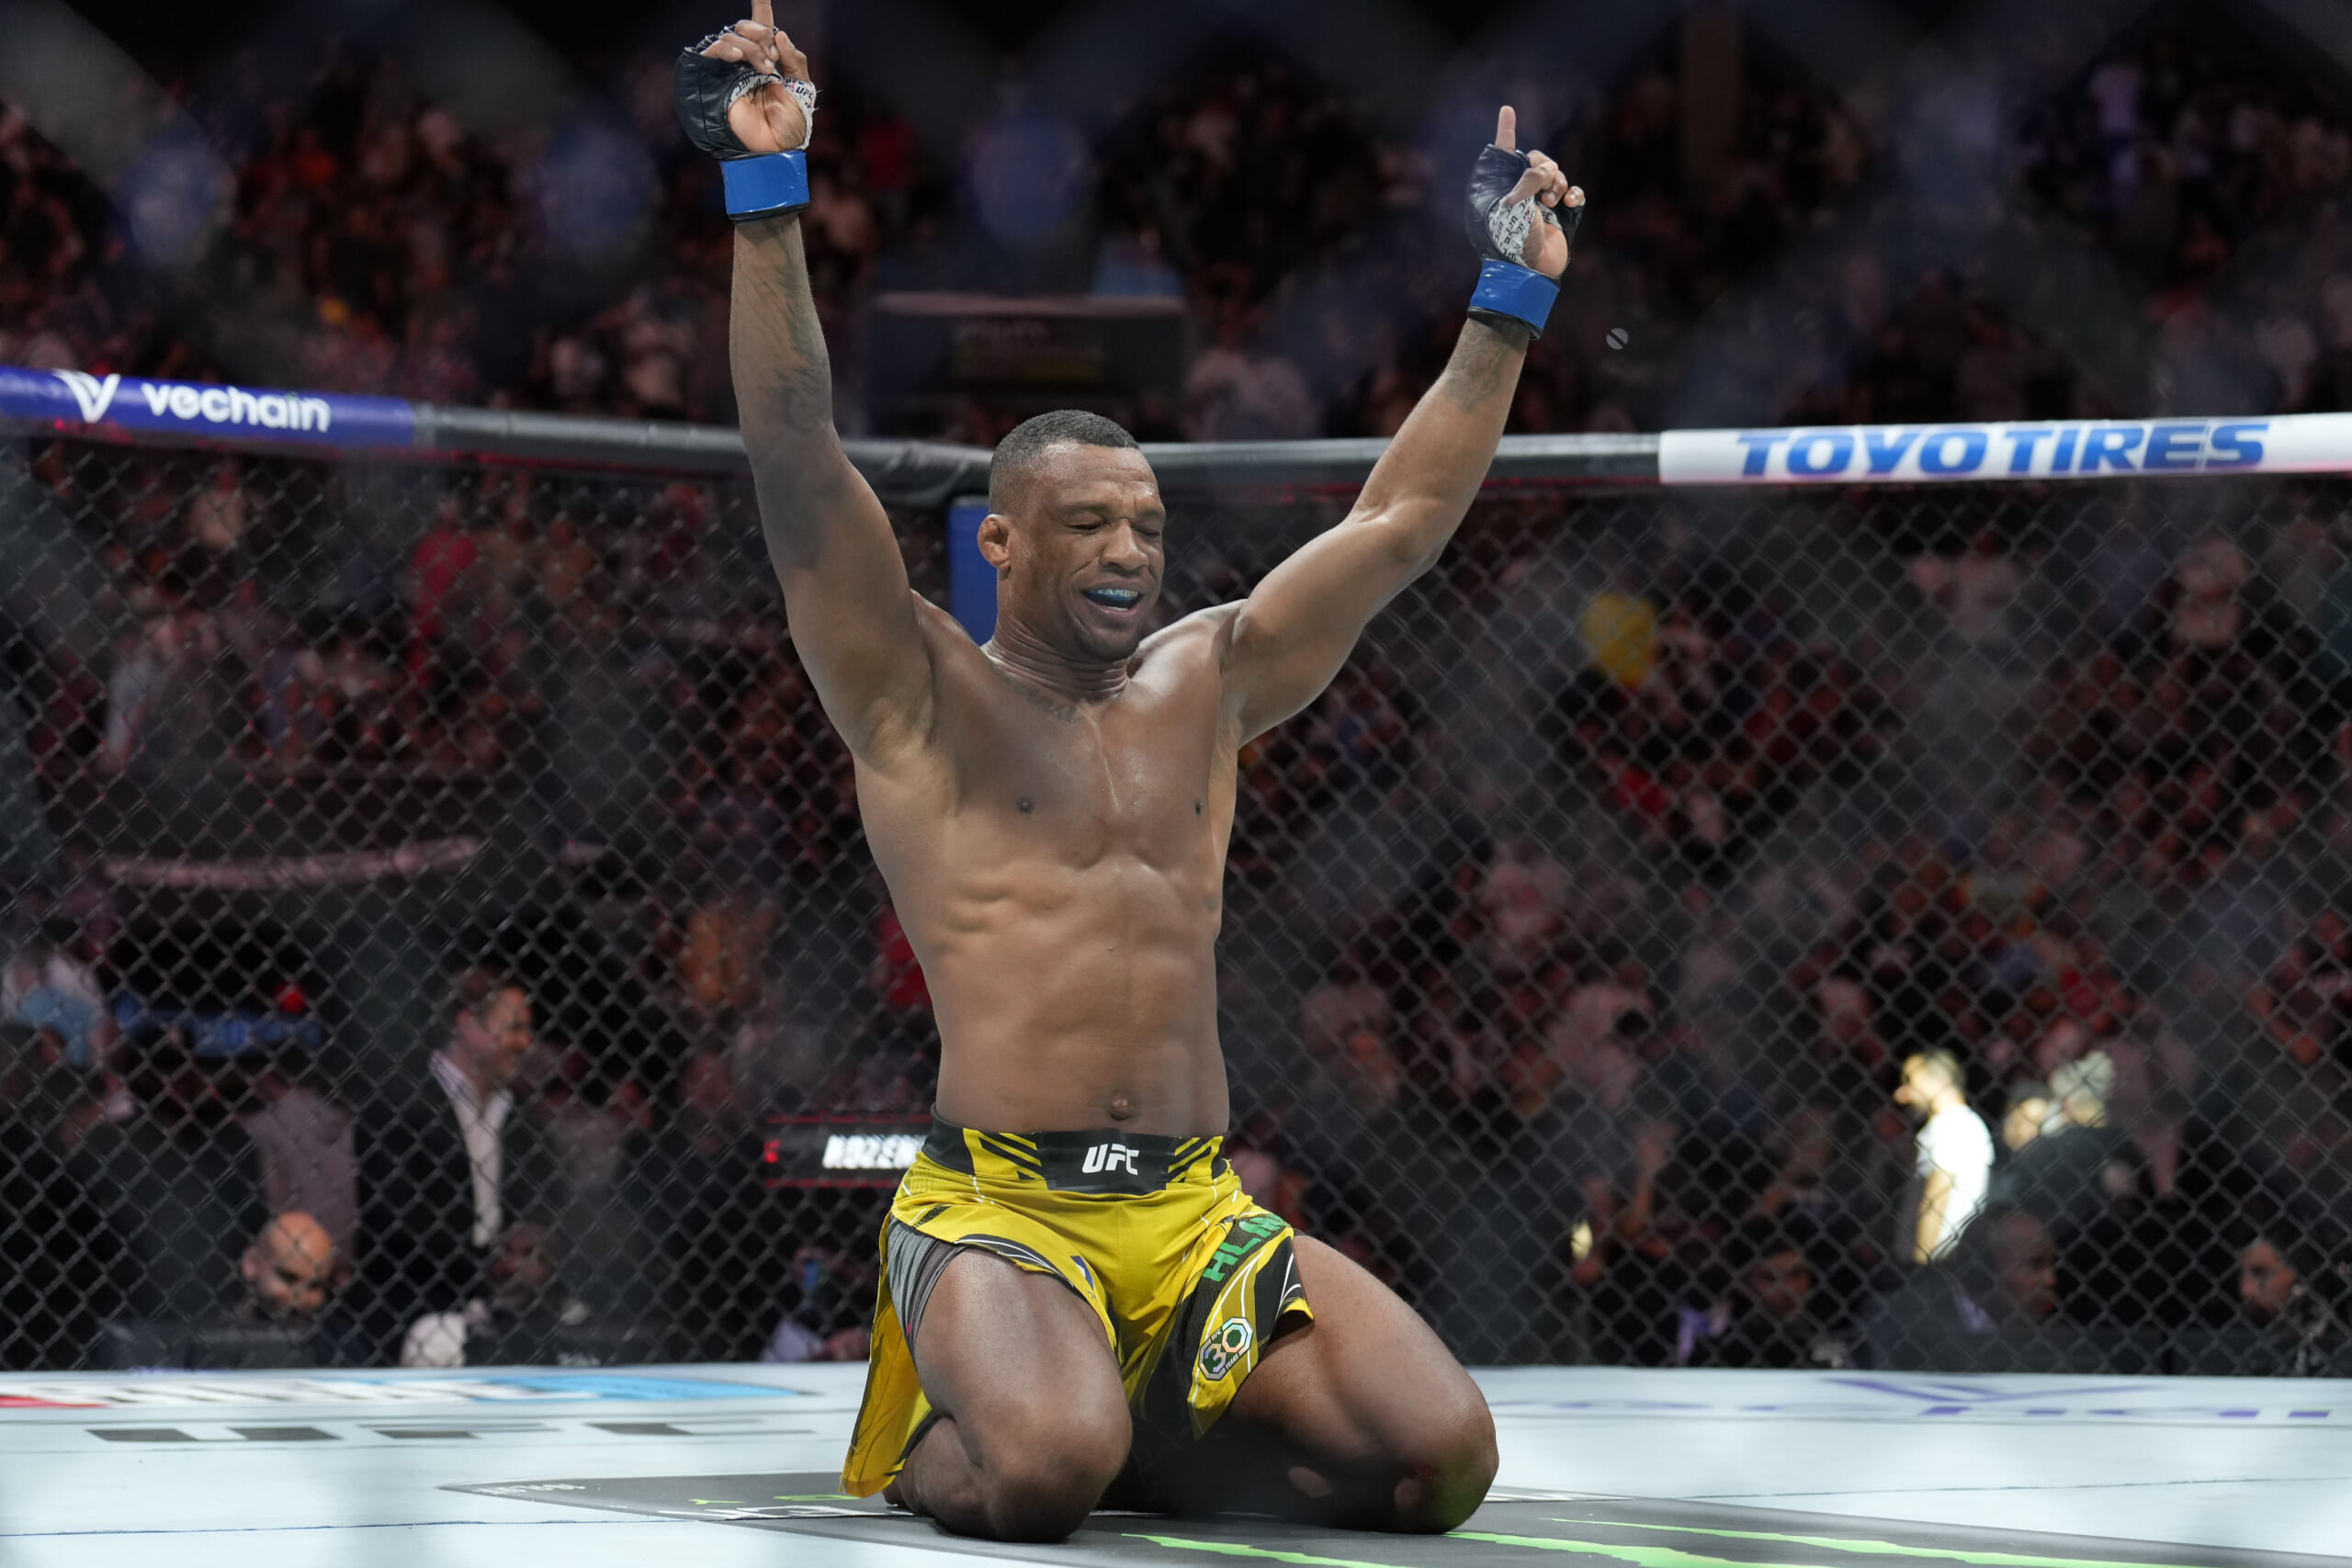 UFC Sao Paulo Recap: Jailton Almeida wins decision over Derrick Lewis in lackluster headliner